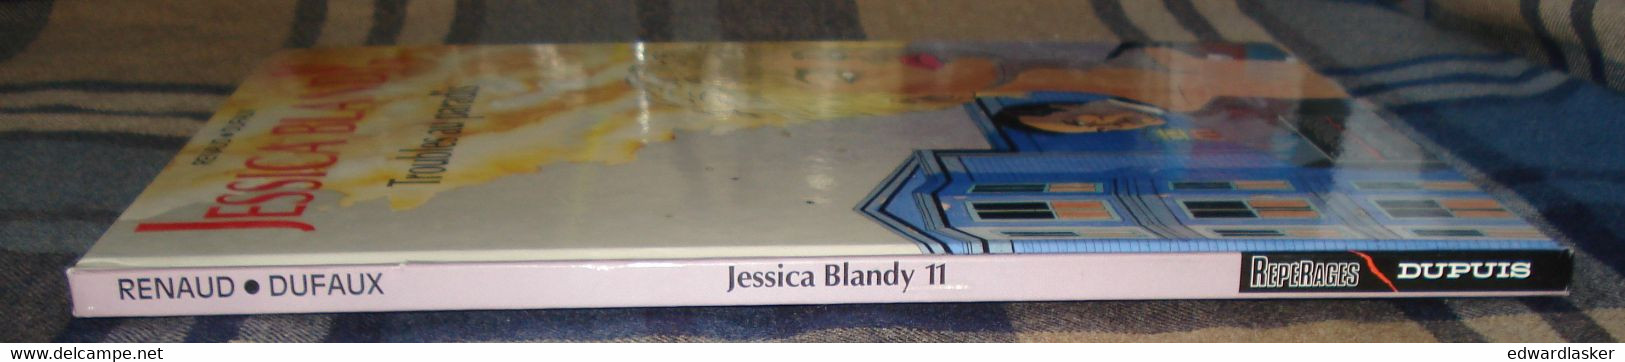 JESSICA BLANDY N°11 : Troubles Au Paradis - Rééd. Dupuis (1998) - Renaud Dufaux - Jessica Blandy